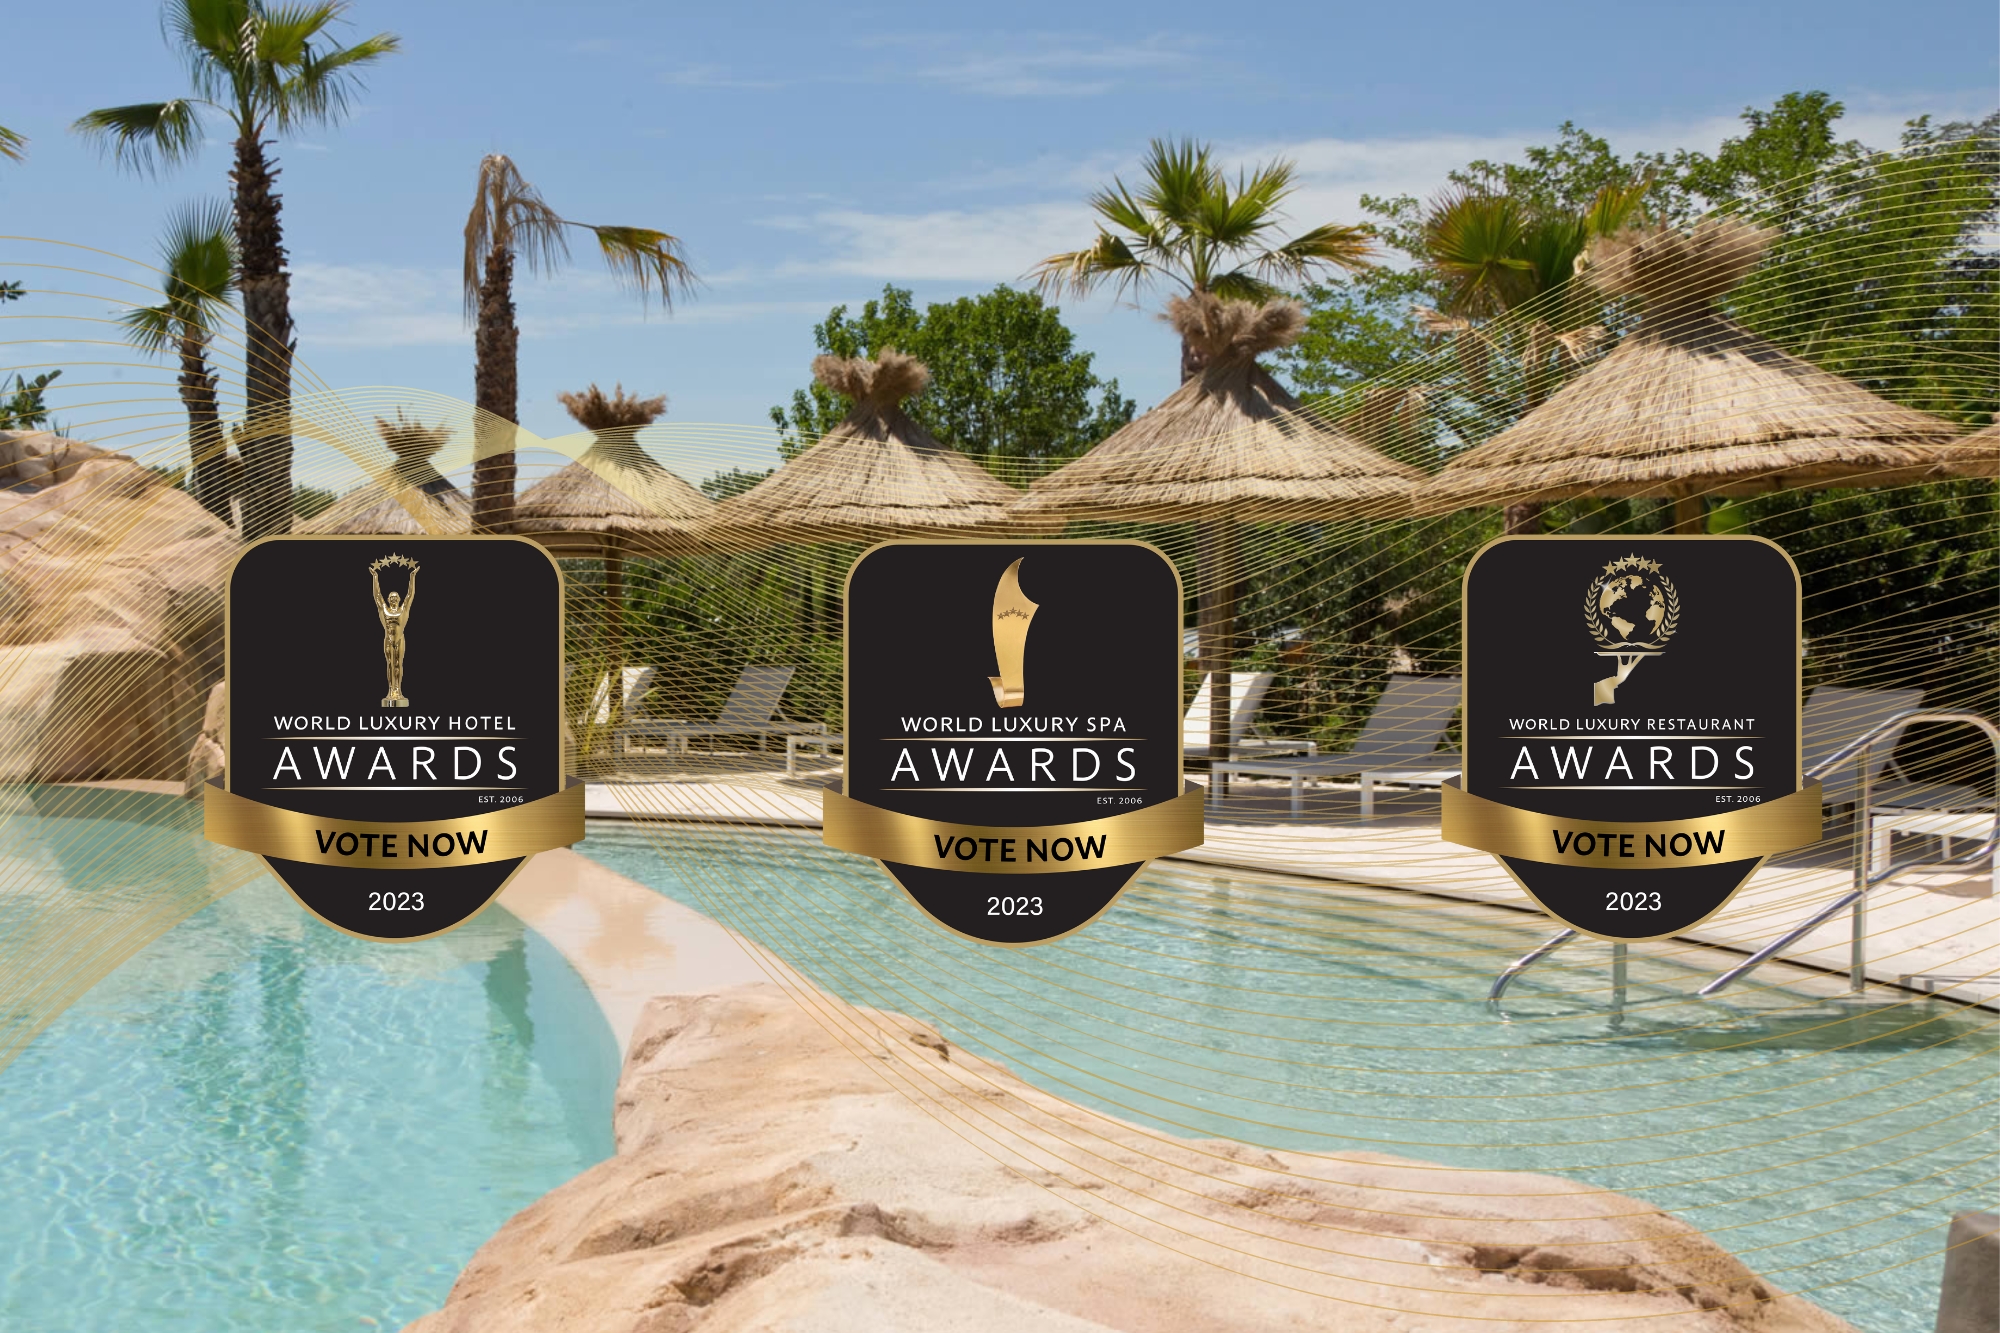 Le SPA at Domaine du Mas de Pierre - World Luxury Spa Awards